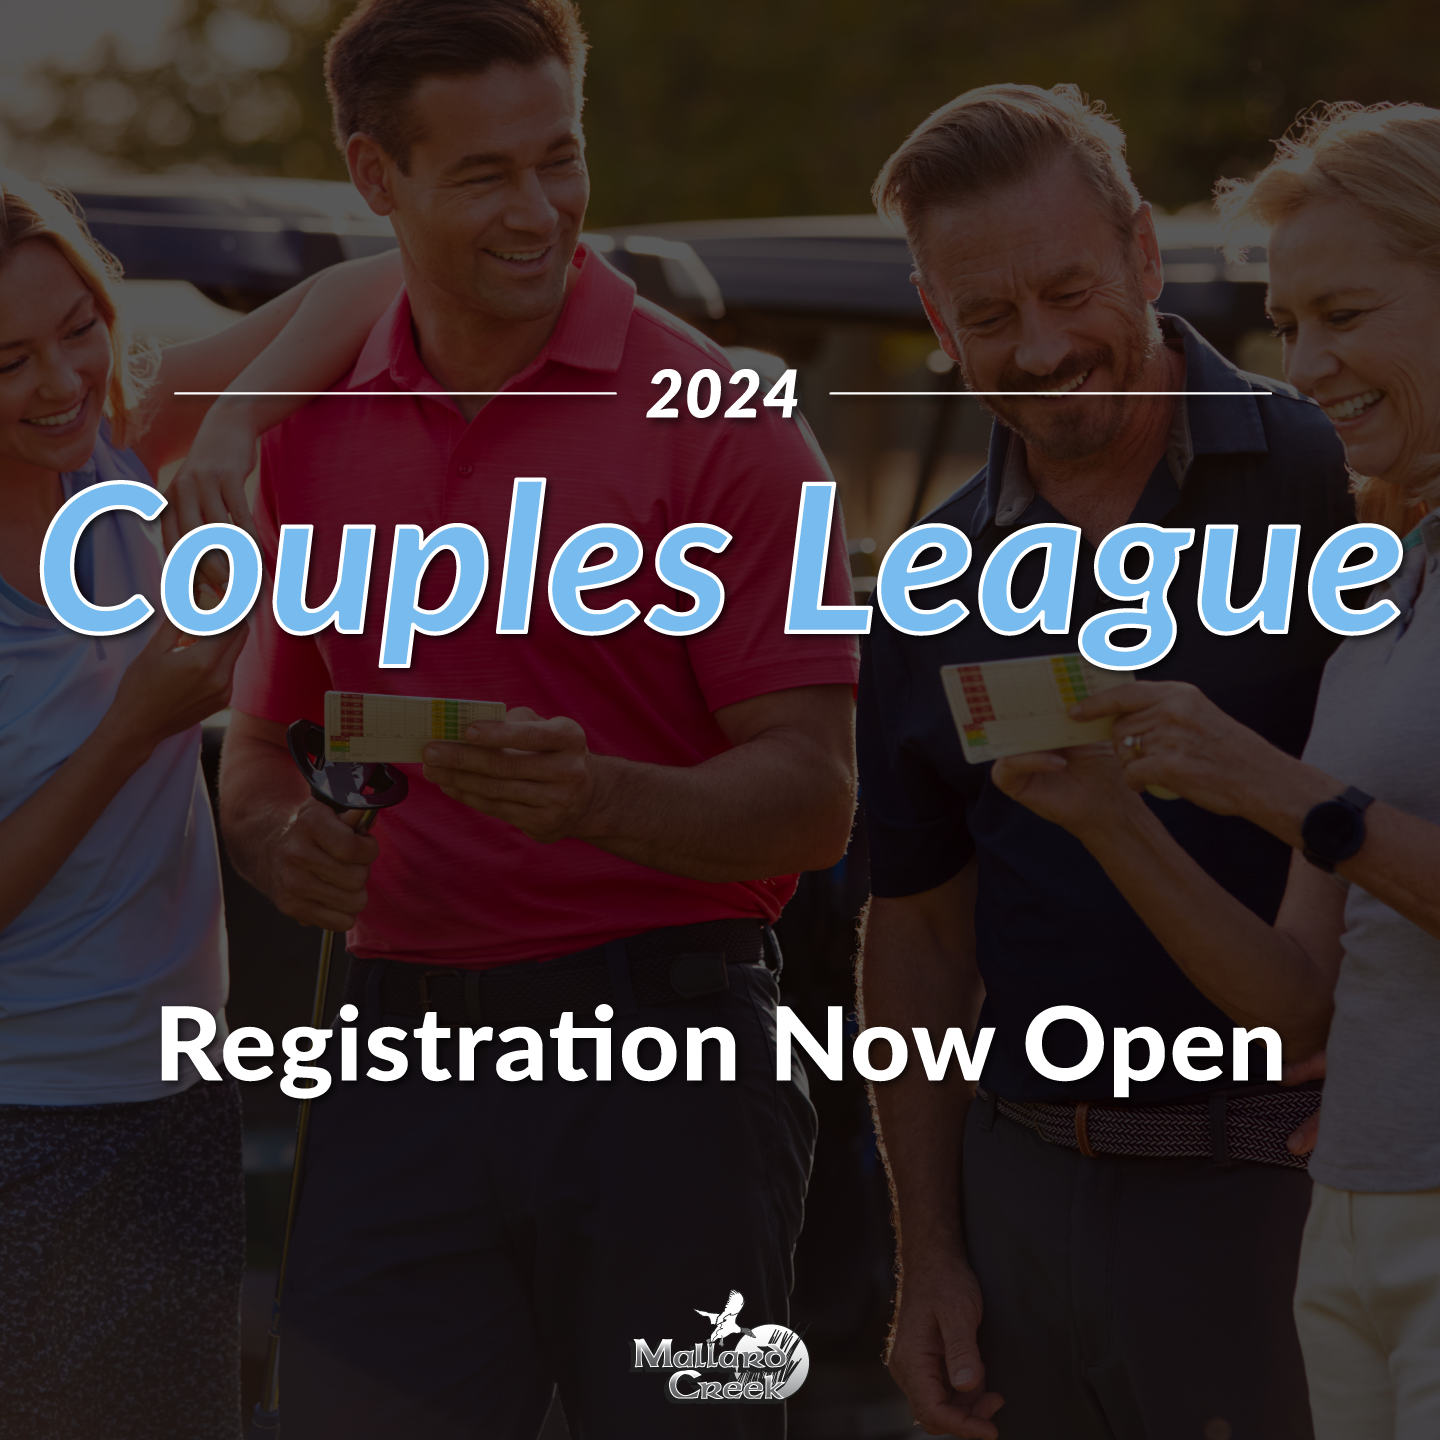 The 2024 Couples League